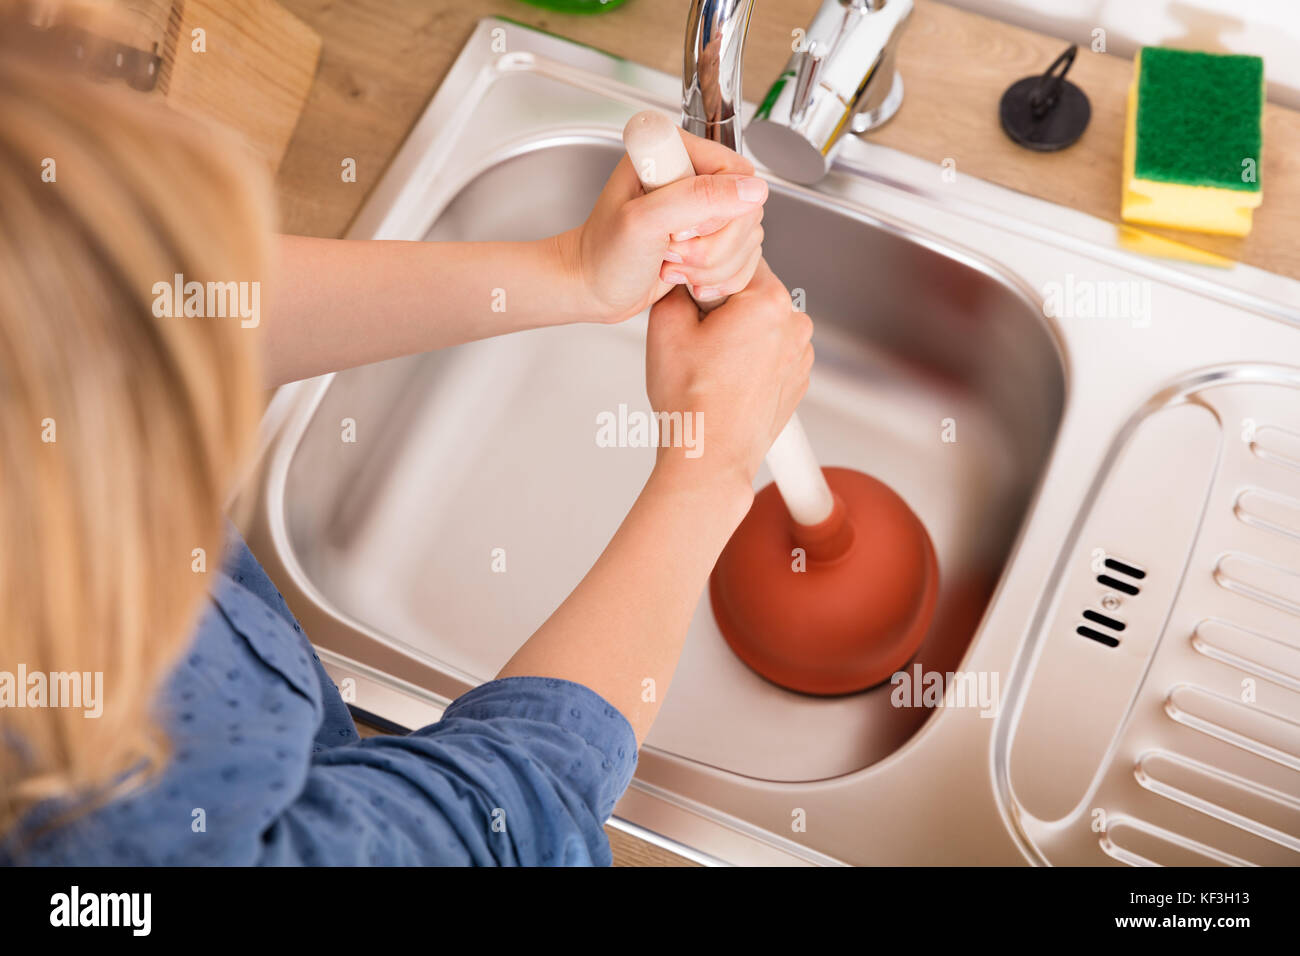 Elevato angolo di visione della donna con pistone bloccato nel lavello da cucina per rimuovere eventuali otturazioni svuotare Foto Stock